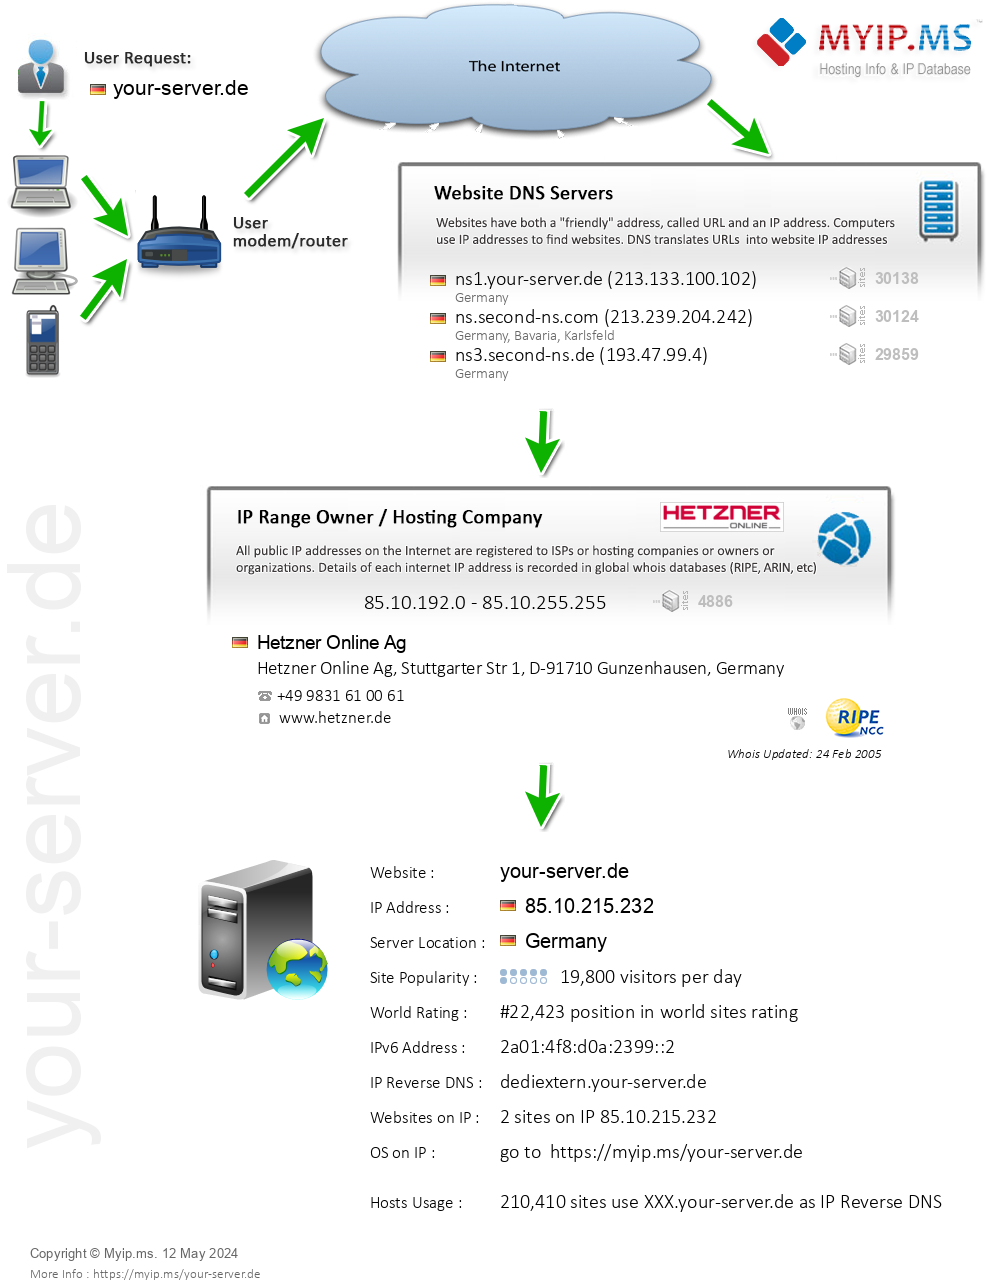 Your-server.de - Website Hosting Visual IP Diagram